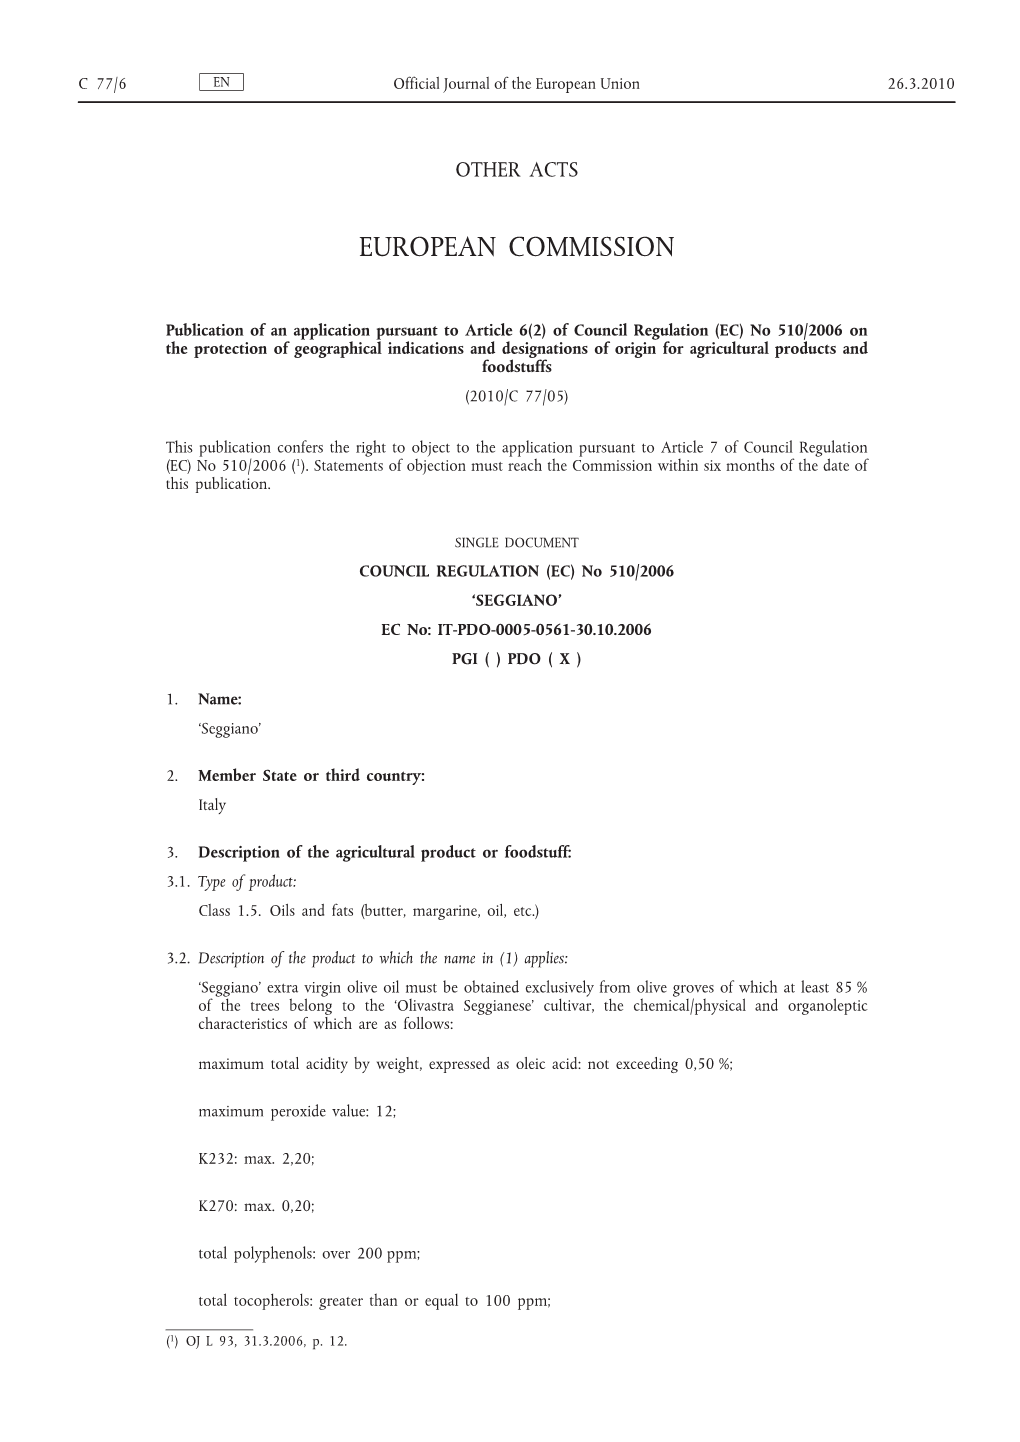 Of Council Regulation (EC) No 510